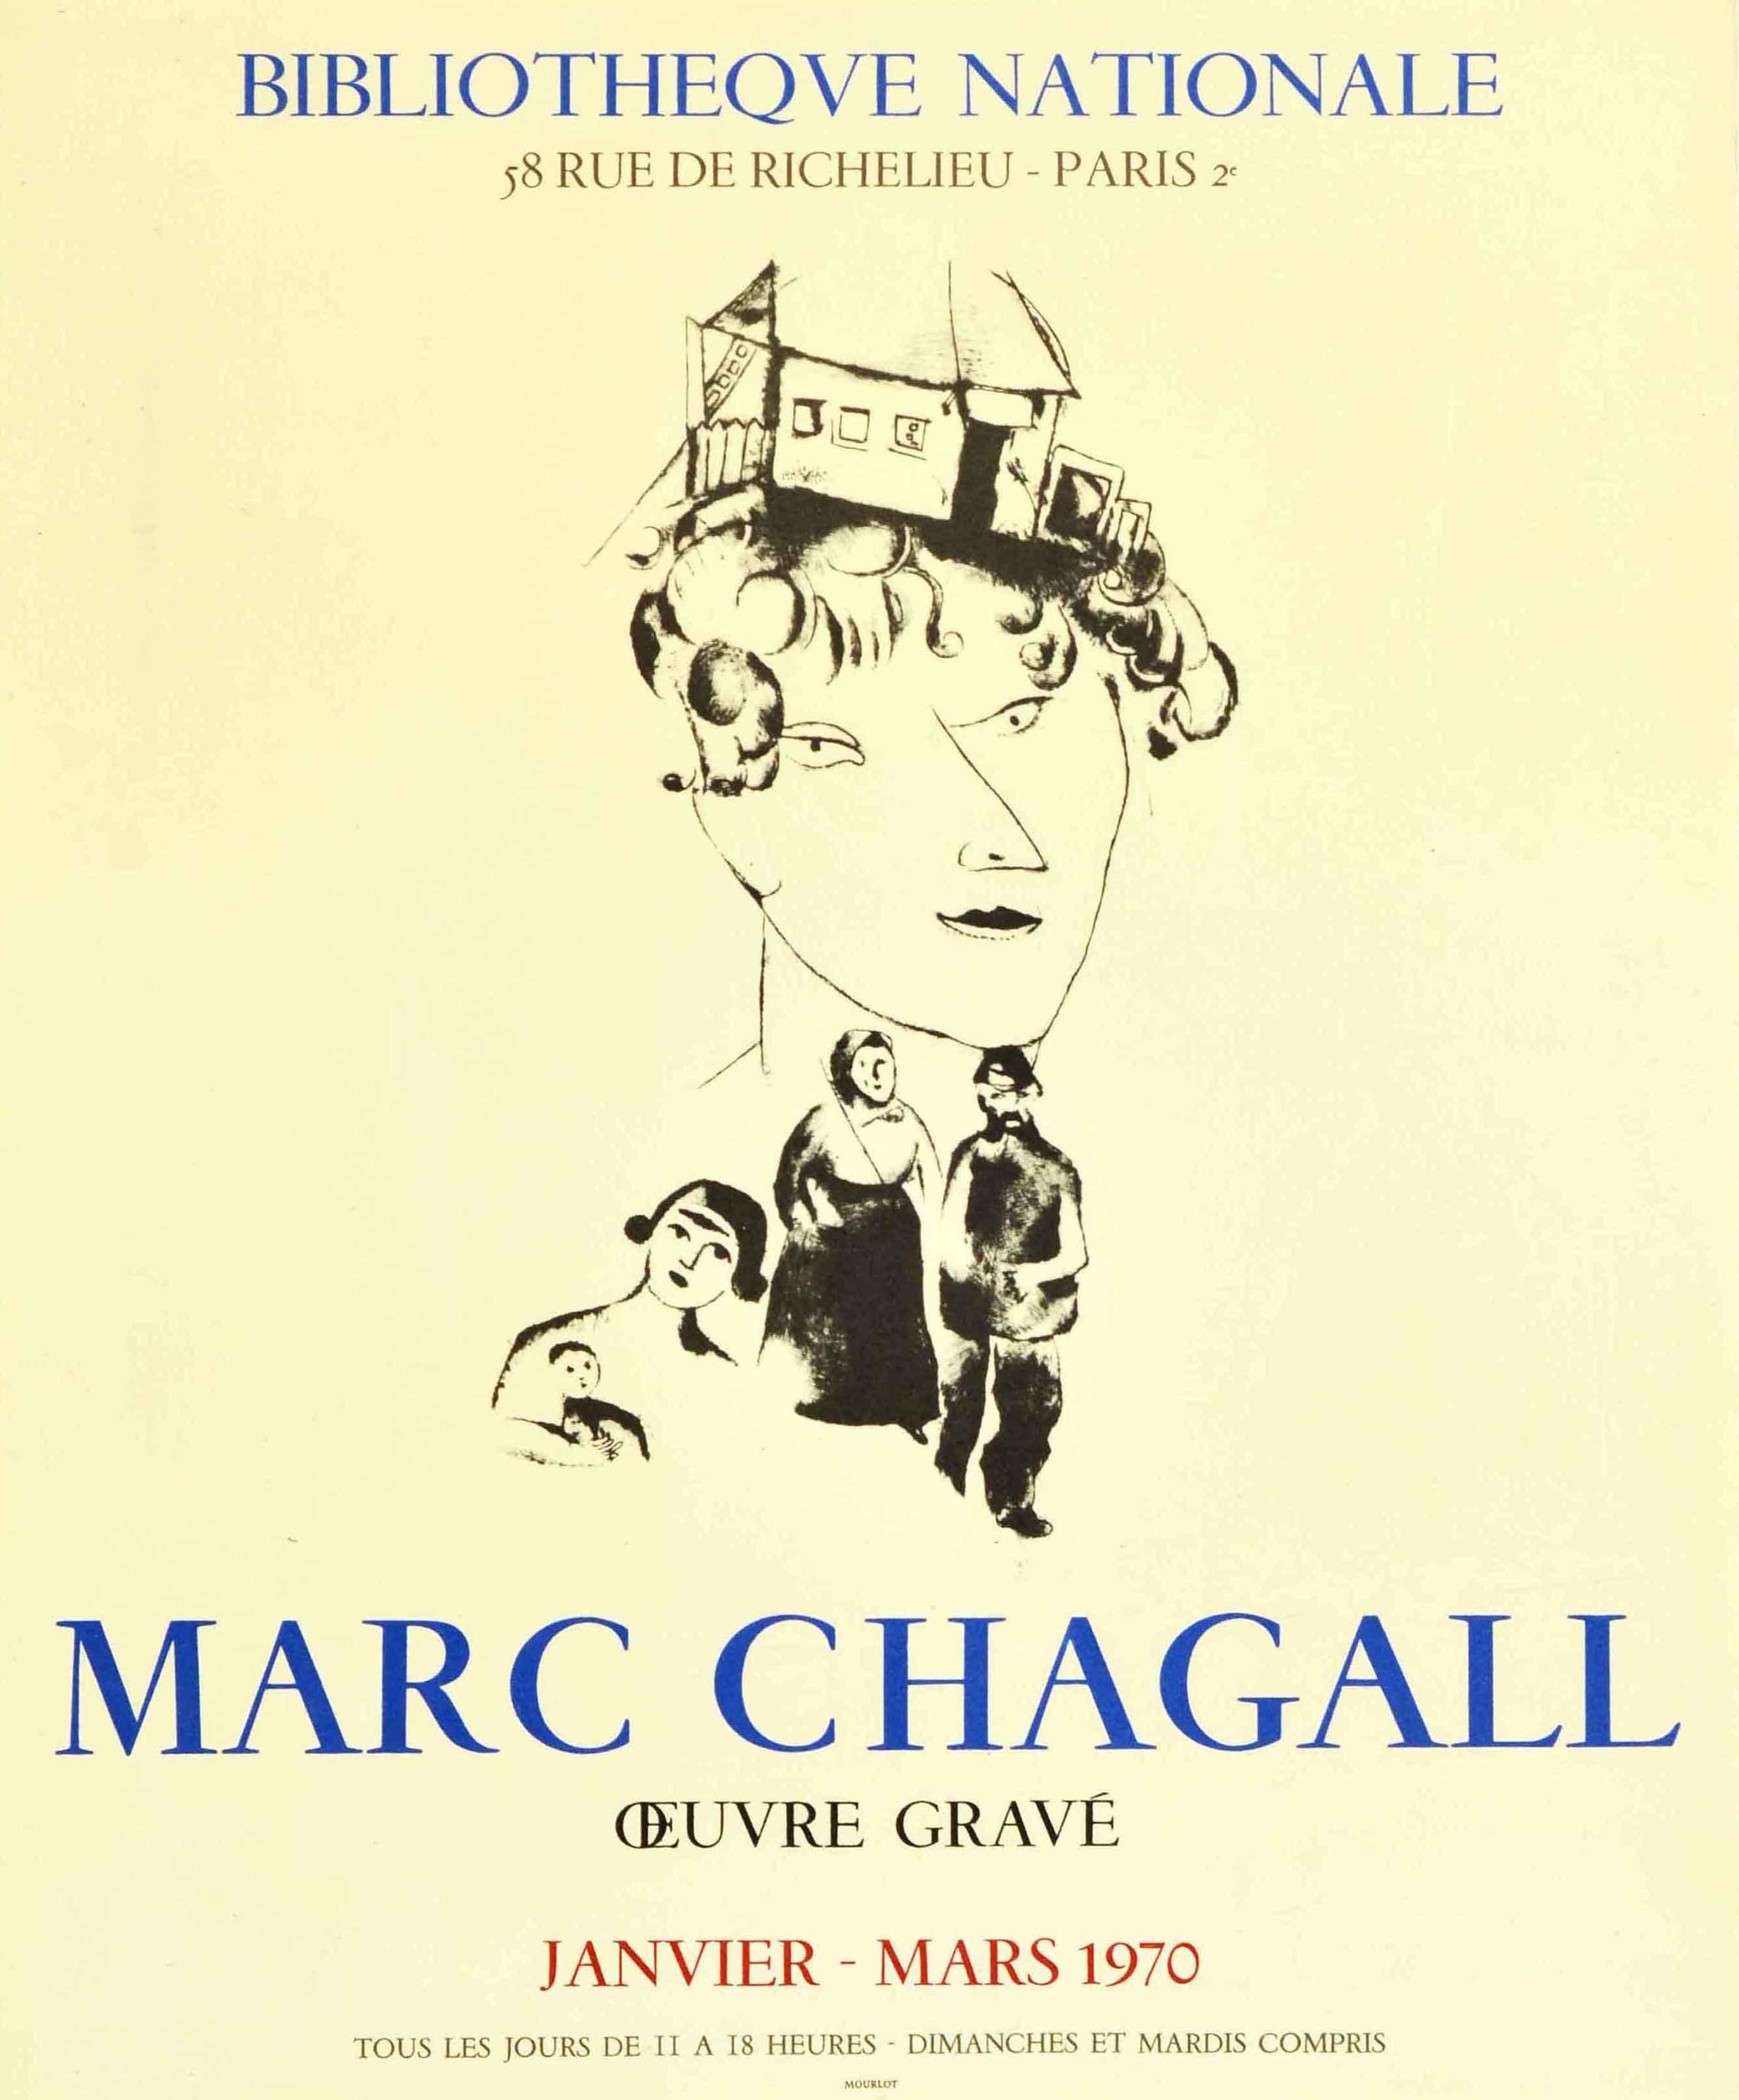 Original Vintage-Werbeplakat für eine Ausstellung von Gravuren des bedeutenden Künstlers Marc Chagall (1887-1985) L'oeuvre Grave, die von Januar bis März 1970 in der Nationalbibliothek / Bibliotheque Nationale Paris stattfand. Das Plakat zeigt